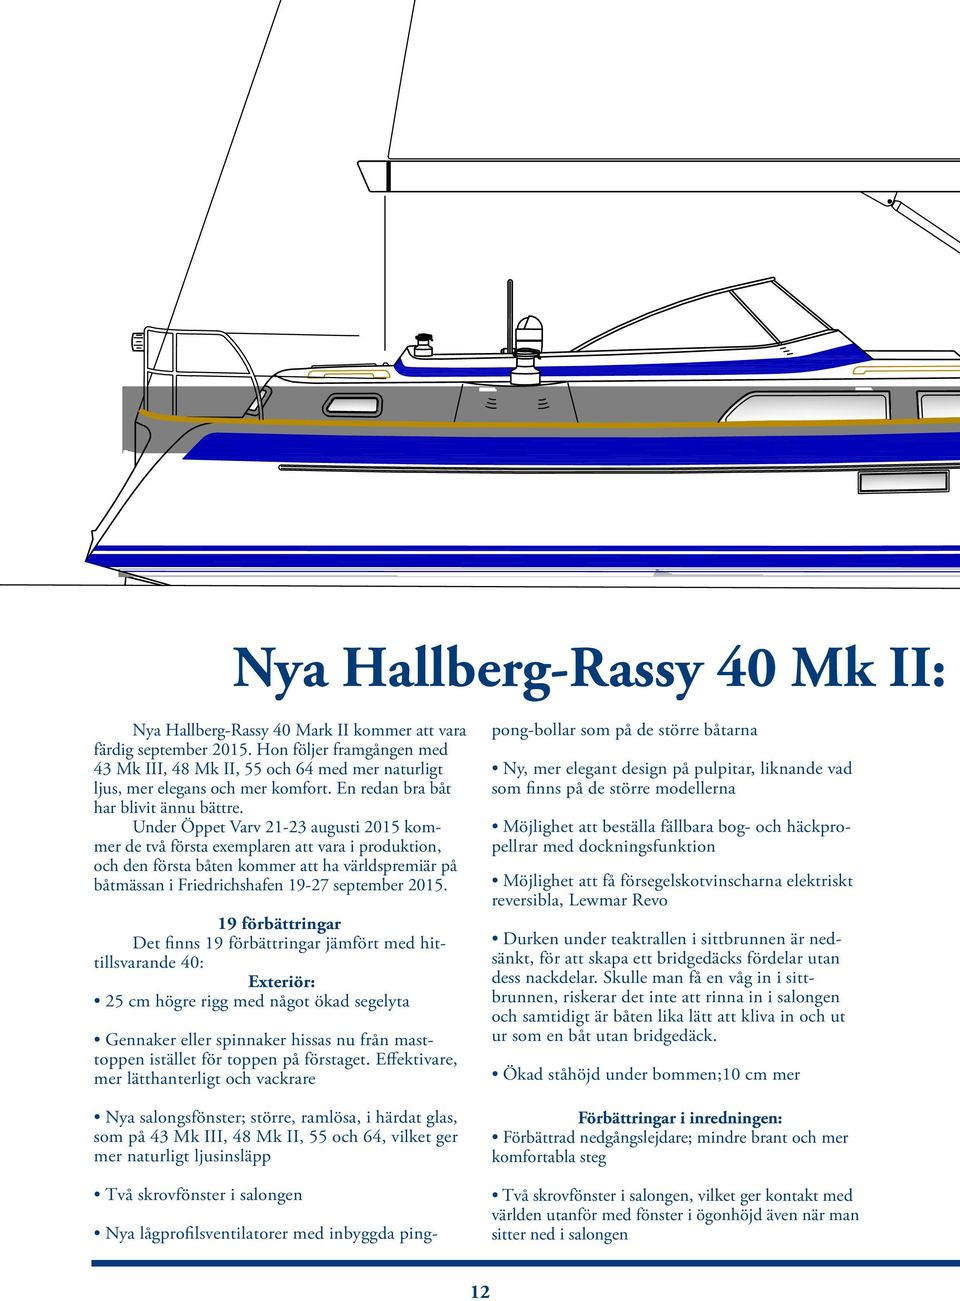 Under Öppet Varv 21-23 augusti 2015 kommer de två första exemplaren att vara i produktion, och den första båten kommer att ha världspremiär på båtmässan i Friedrichshafen 19-27 september 2015.